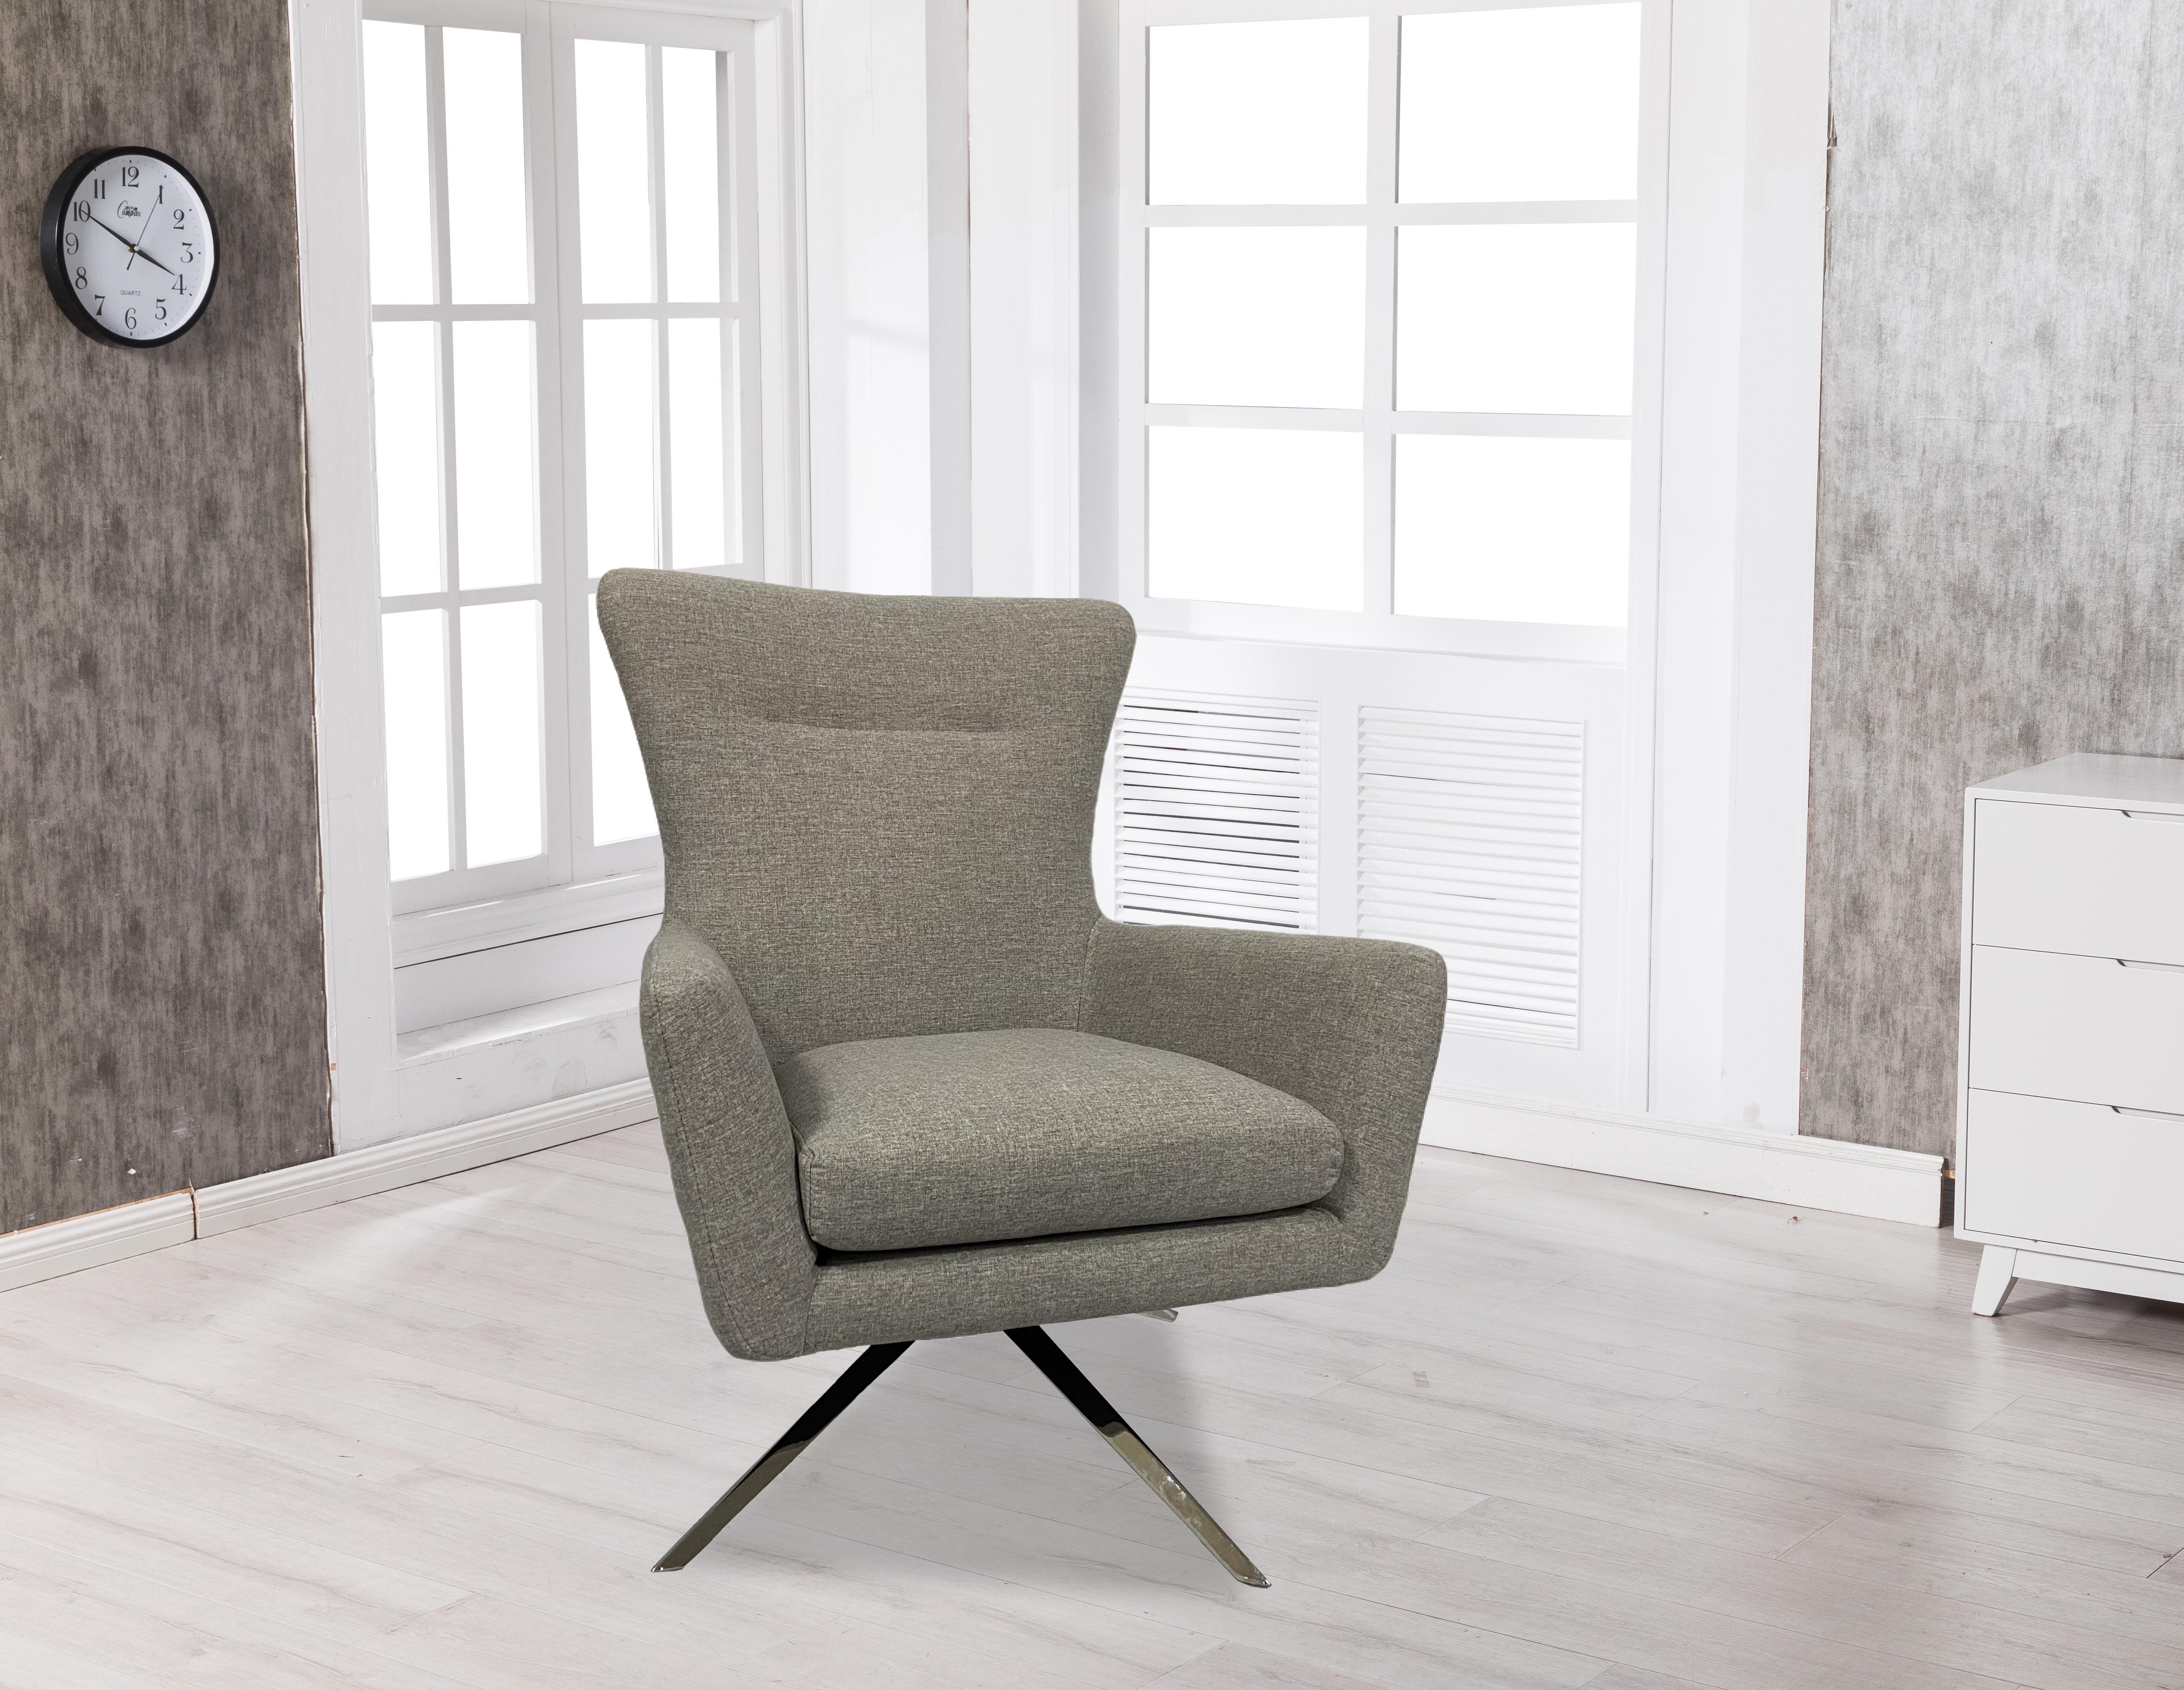 UBesGoo Modern Style Comfortable Swivel Lounge Chair - image 2 of 7